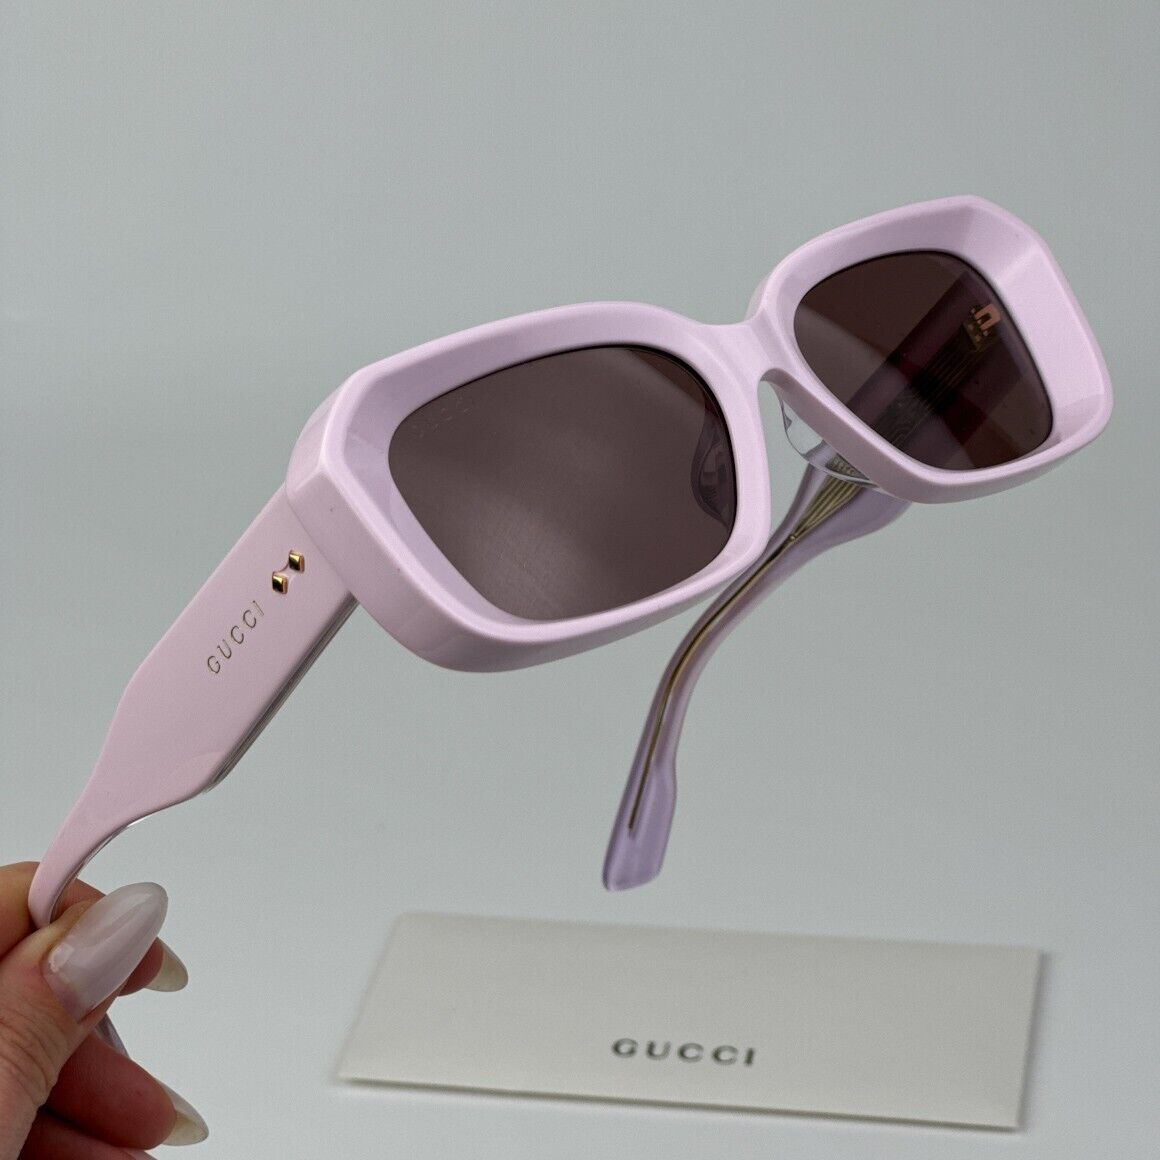 Gucci GG1531SK-003-54 54mm New Sunglasses